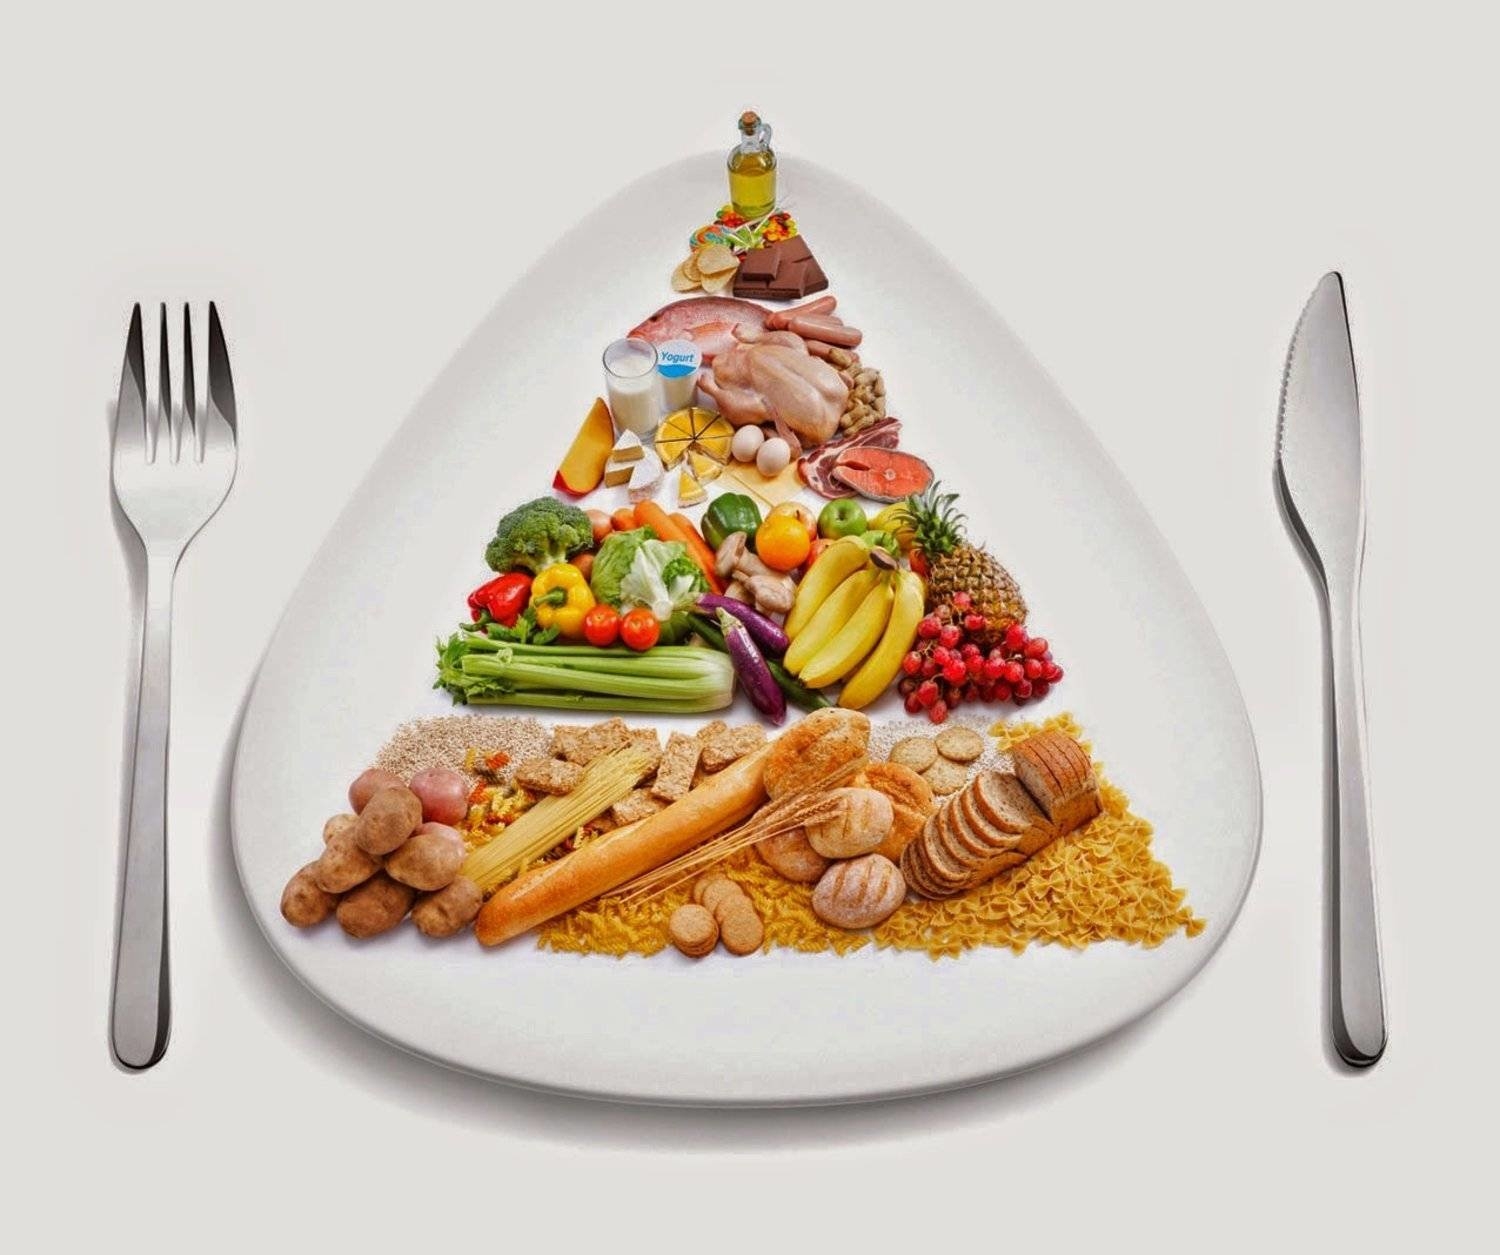 7 أطعمة صحية بين الوجبات تحفّز إنقاص الوزن